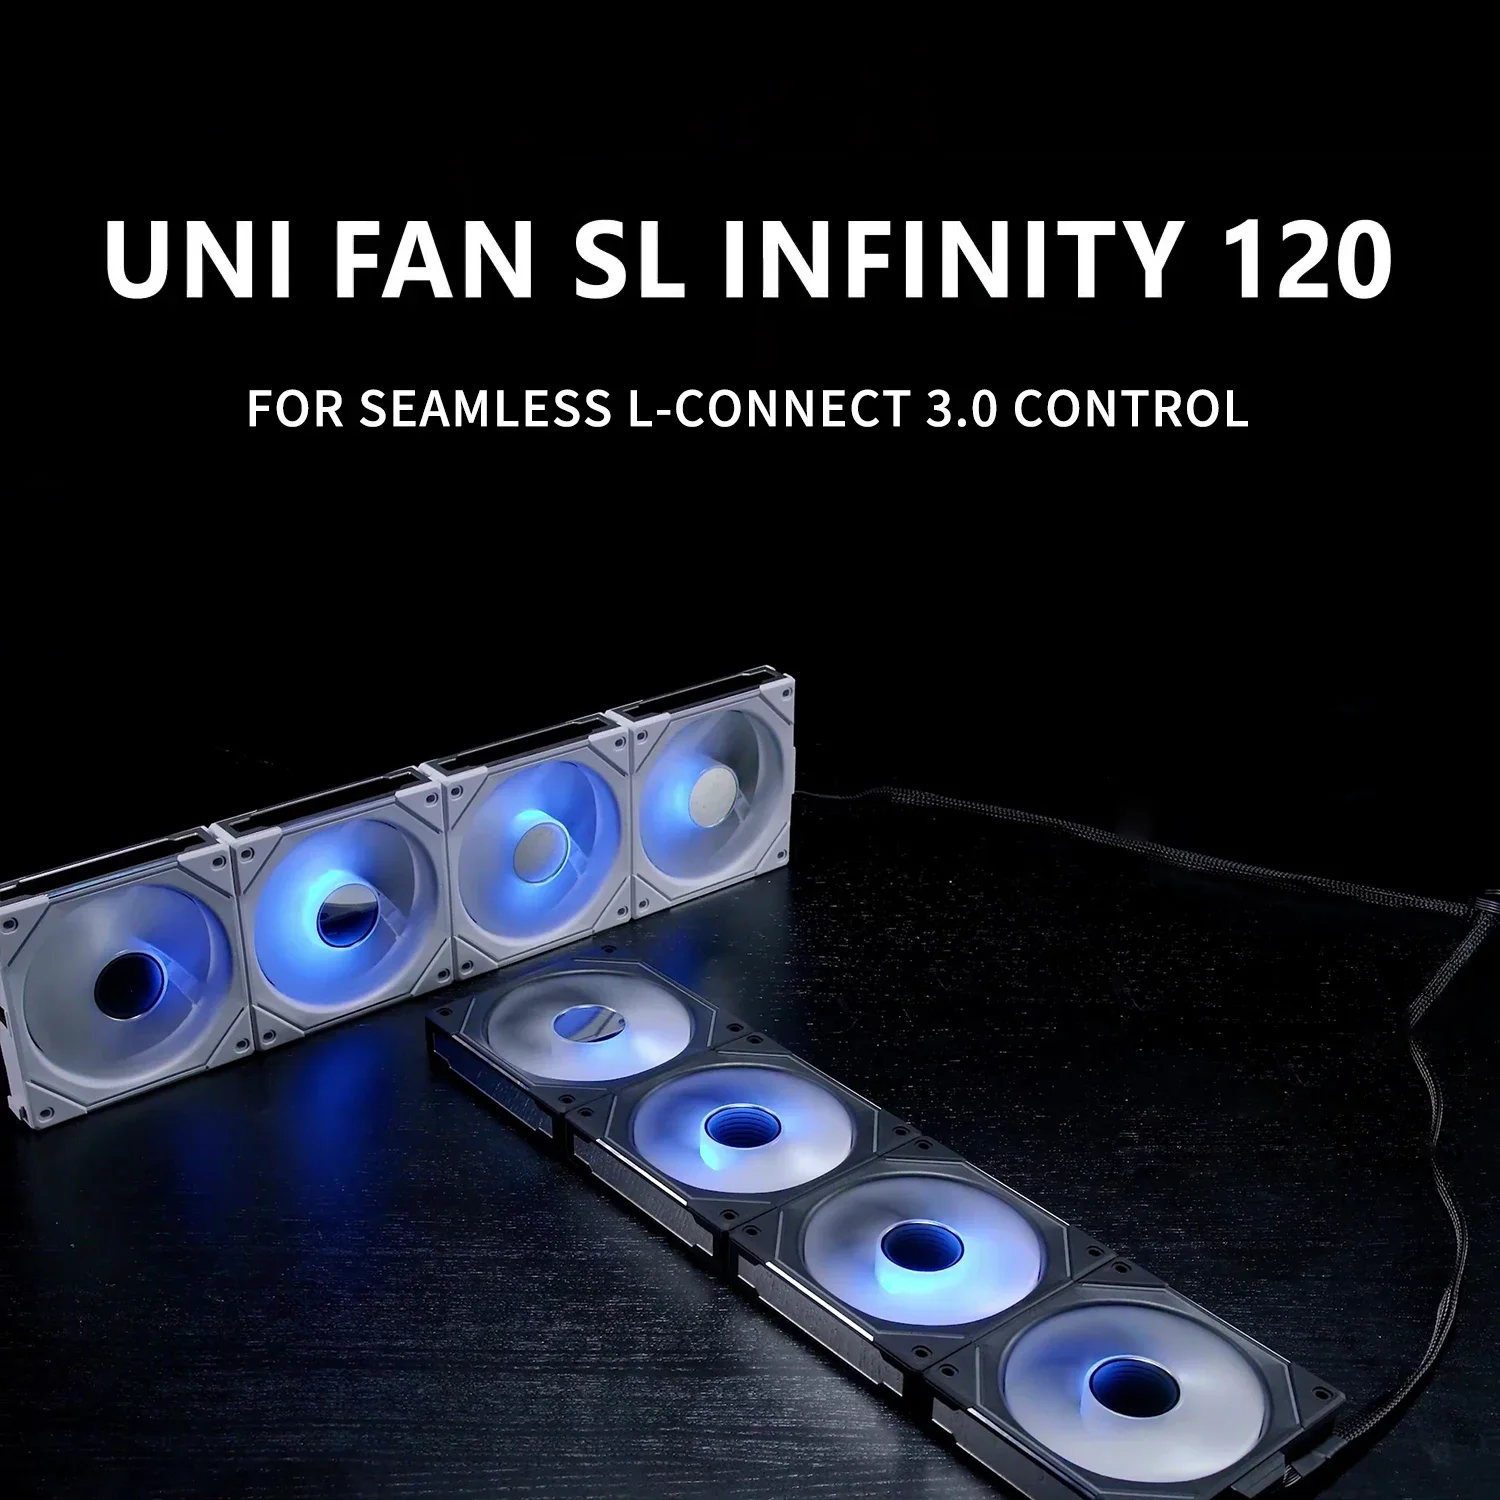 Вентилятор Lian Li UNI SL Infinity 120, зеркальная цепочка A-RGB, система L-connect 3.0, черный/белый цвет